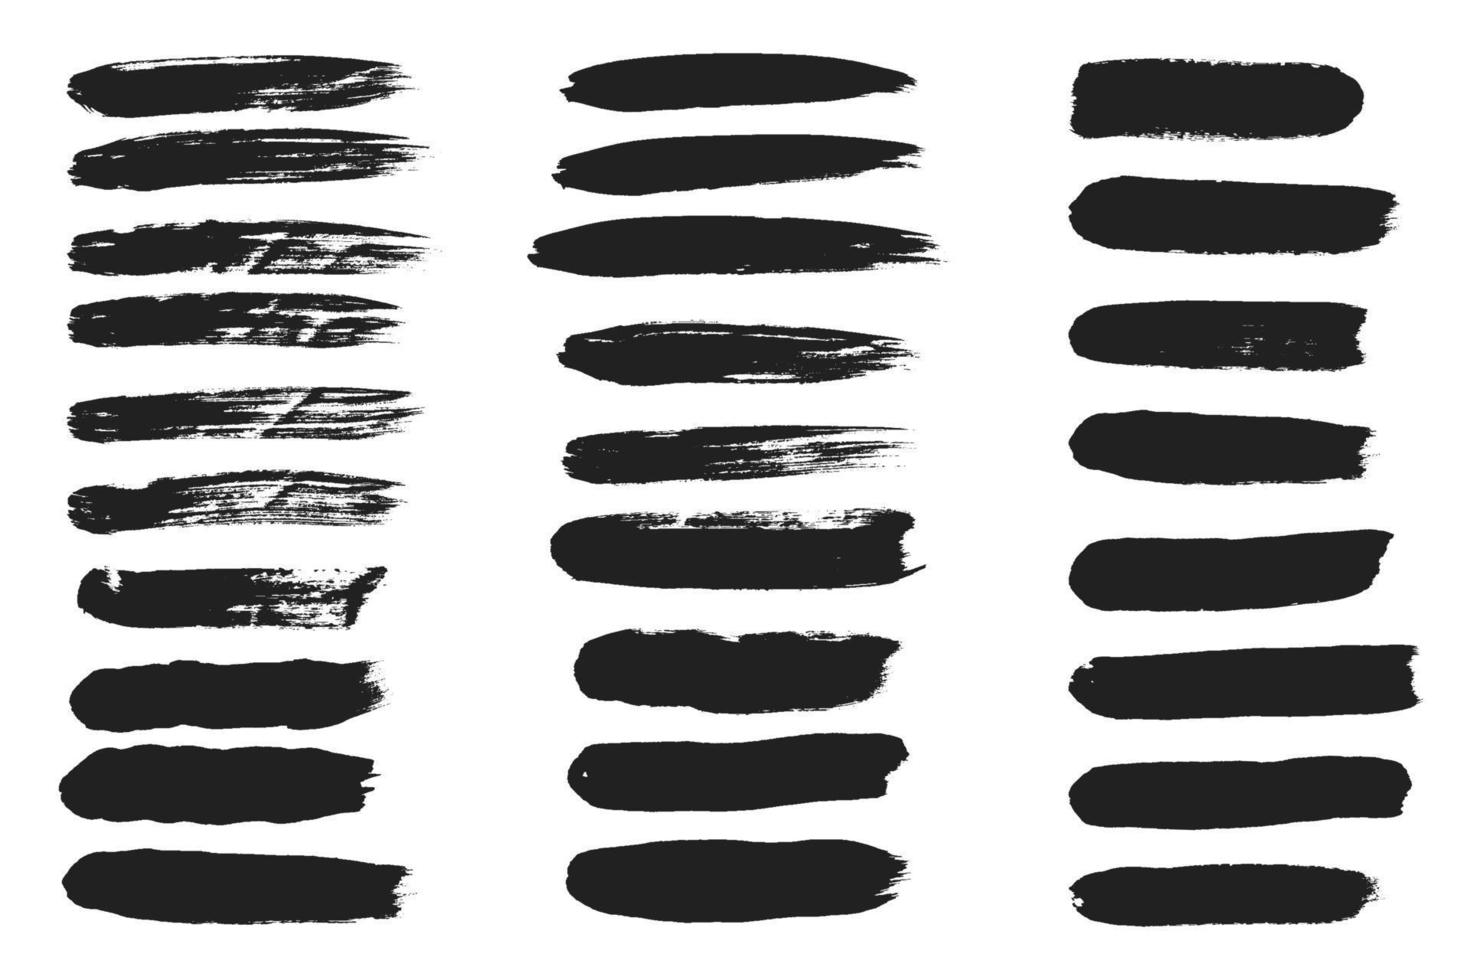 große sammlung von handgezeichneten spurpinselstrichen schwarze farbe textur set vektorillustration isoliert auf weißem hintergrund. Kalligrafie bürstet hochdetaillierte abstrakte Elemente. vektor